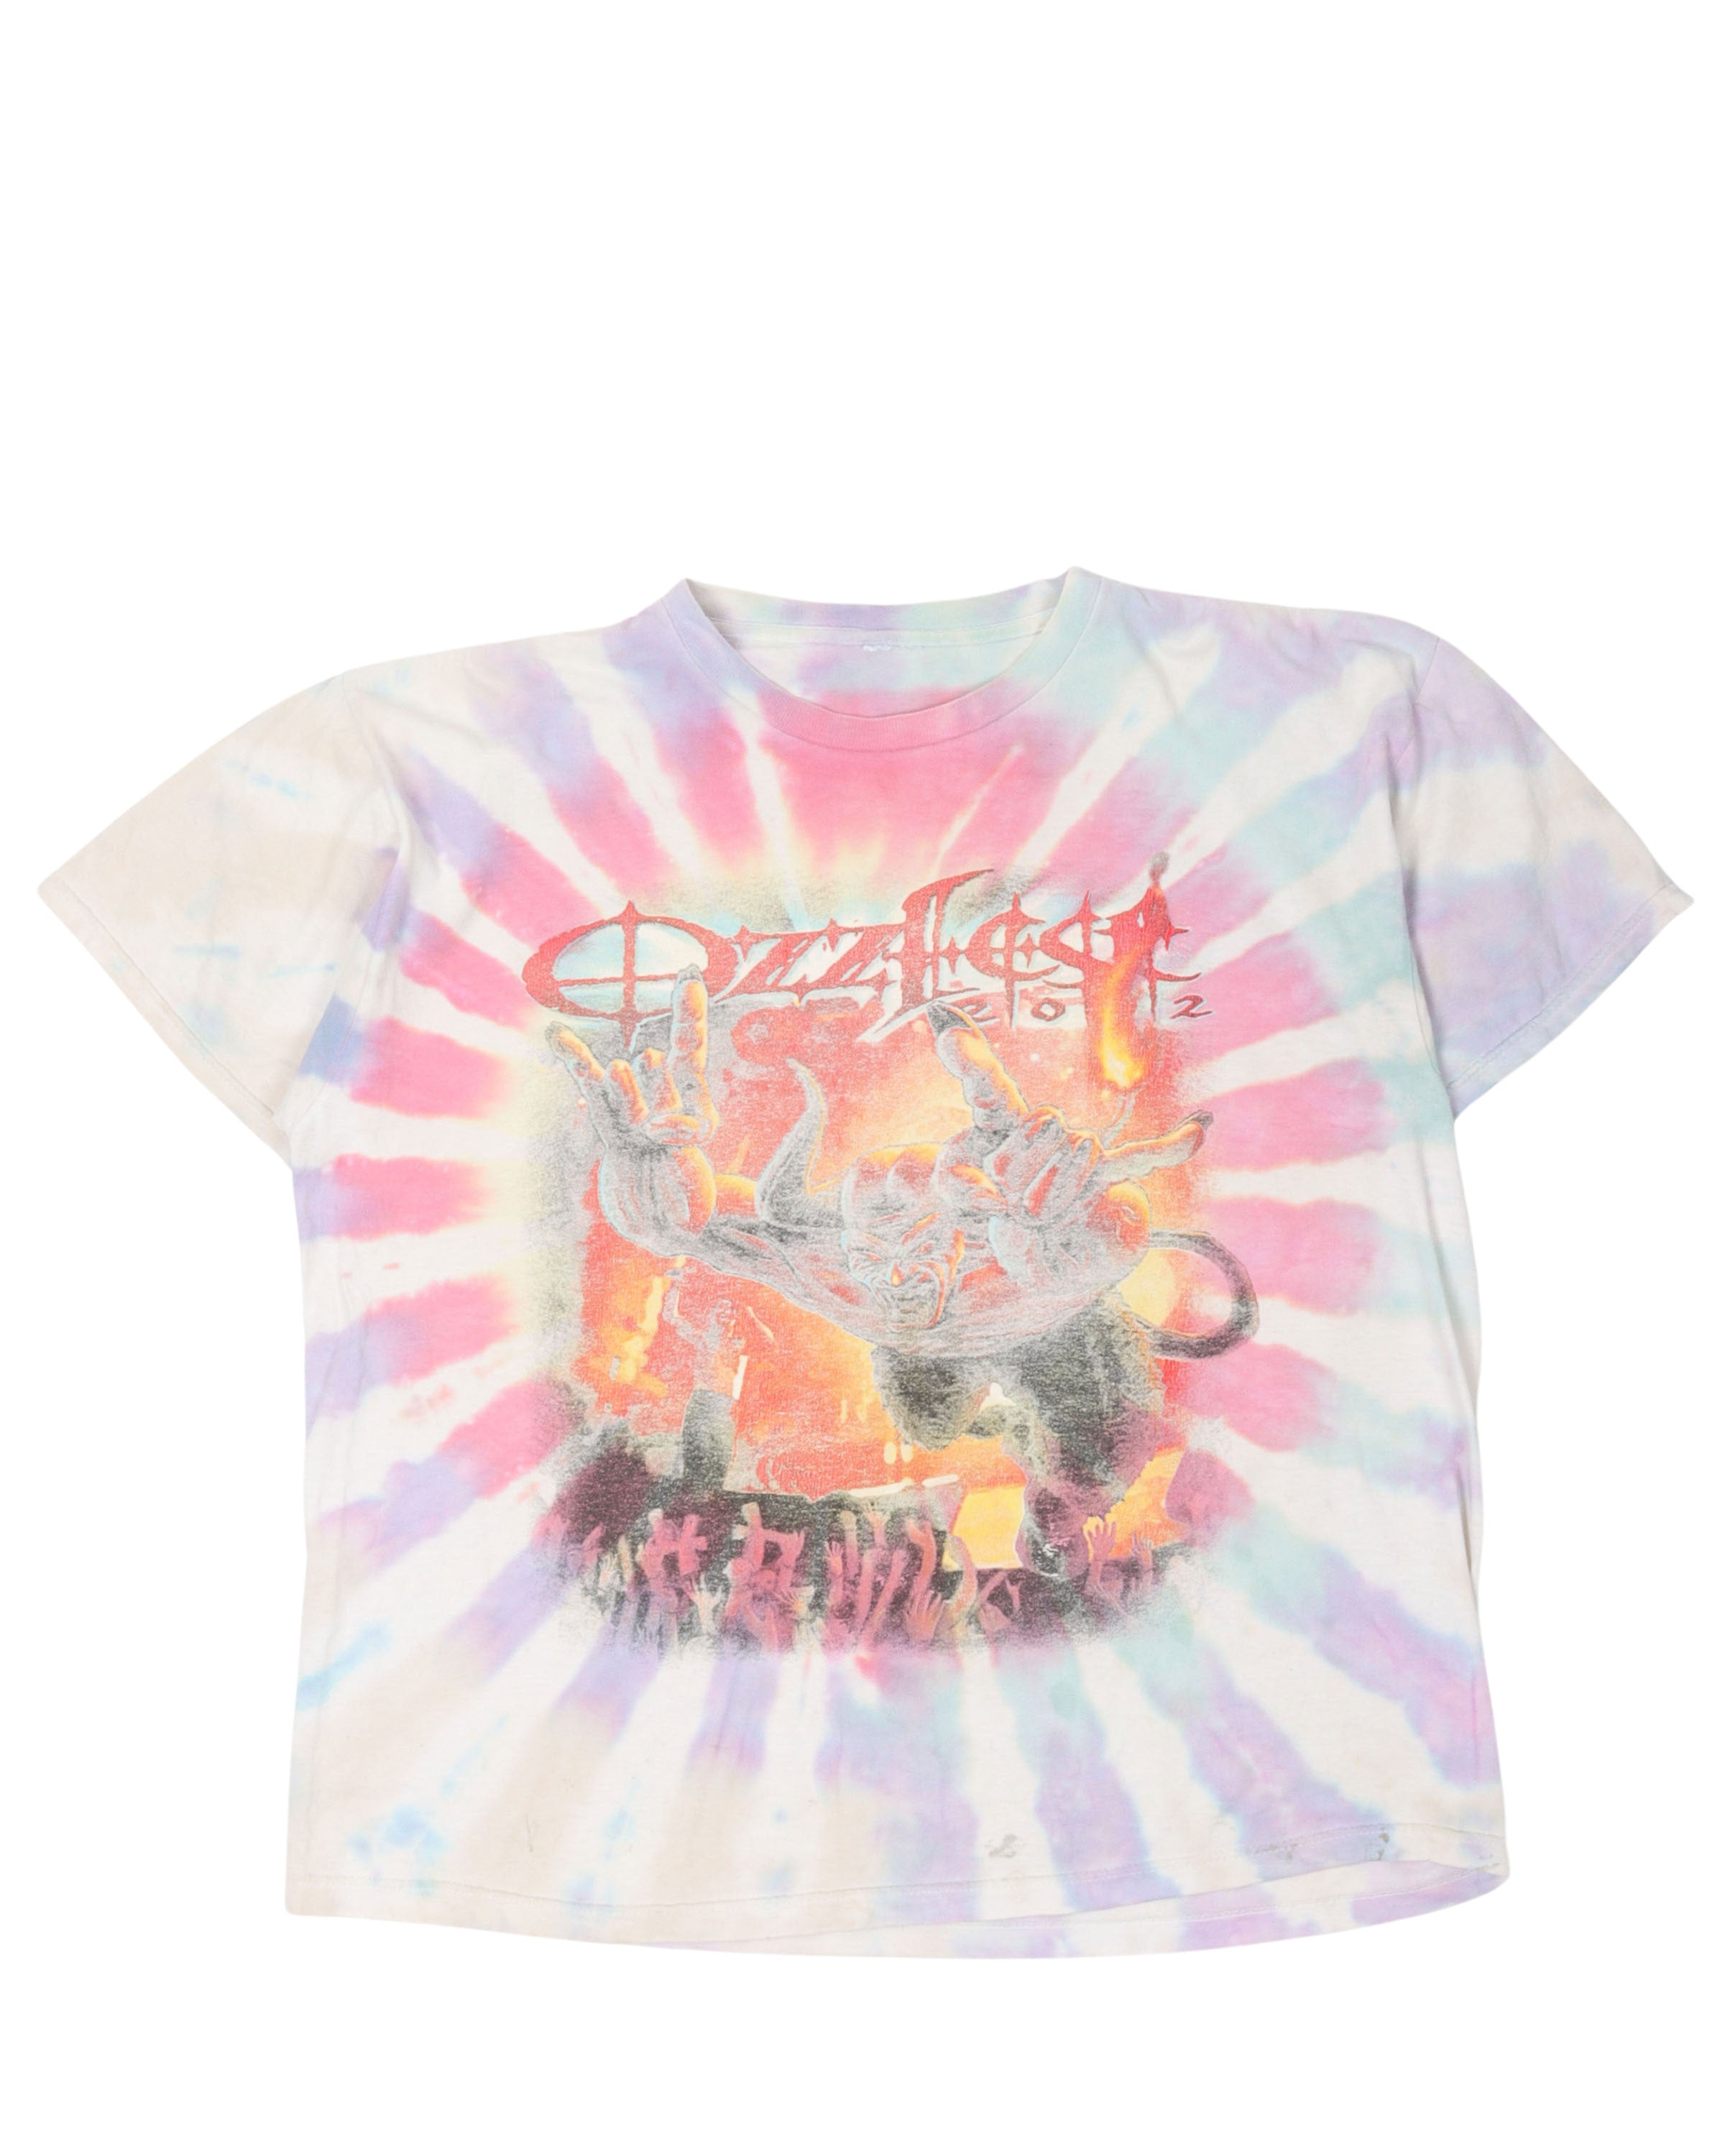 Ozzfest Tie Dye T-Shirt